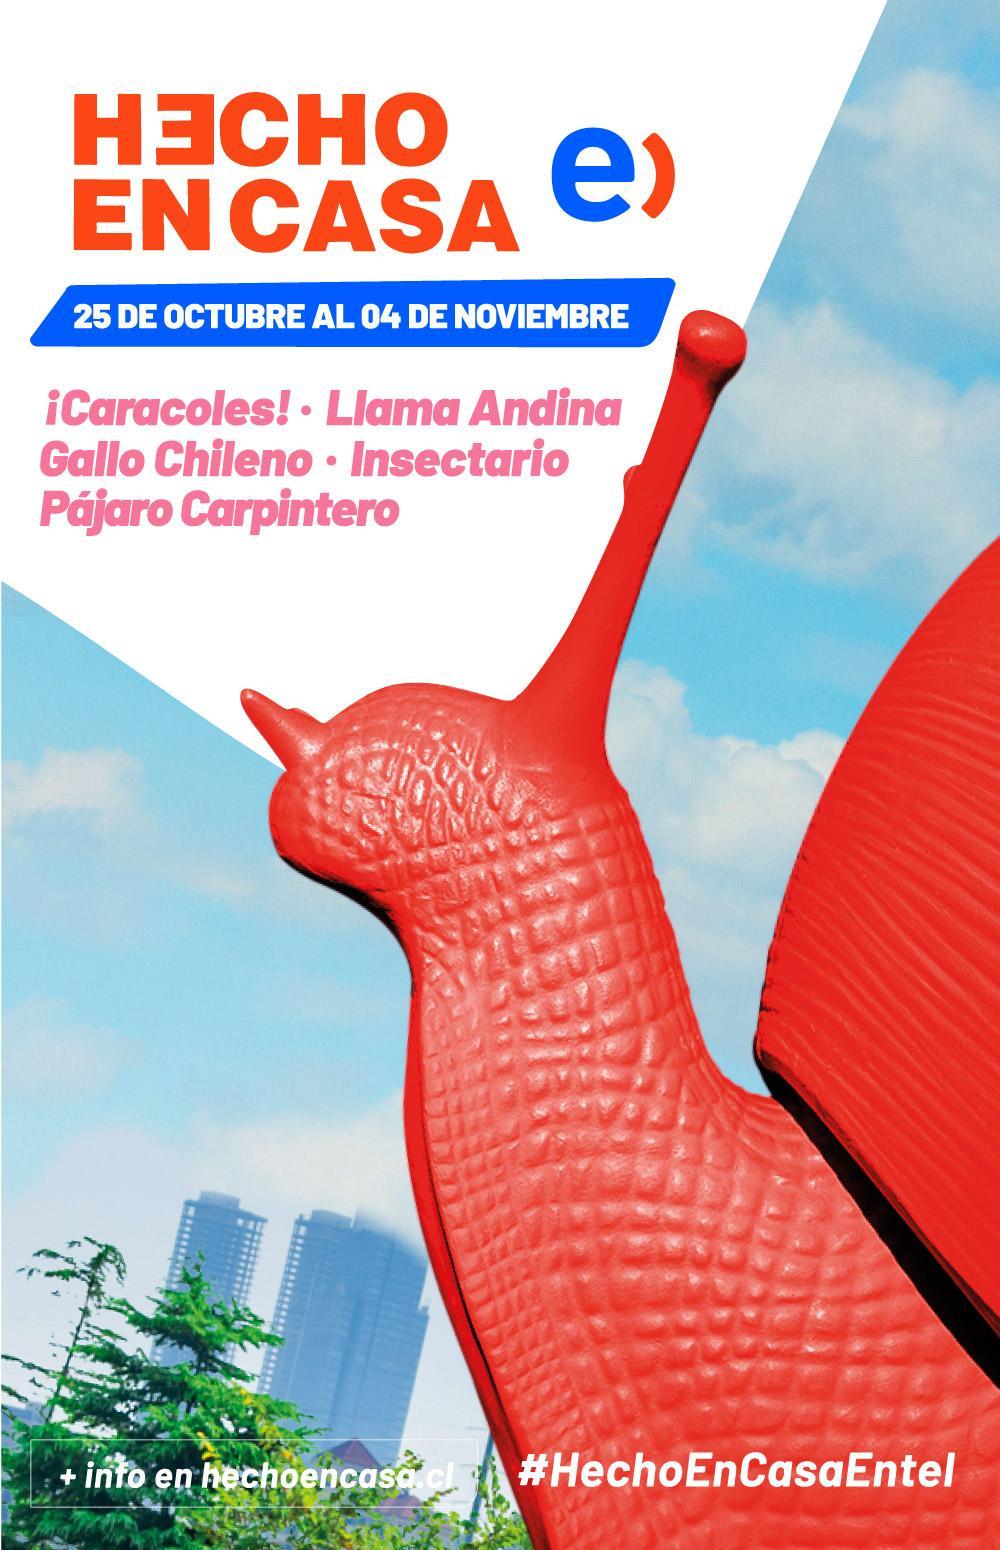 Animales de Chile se toman el Festival Hecho en Casa Entel 2018 1